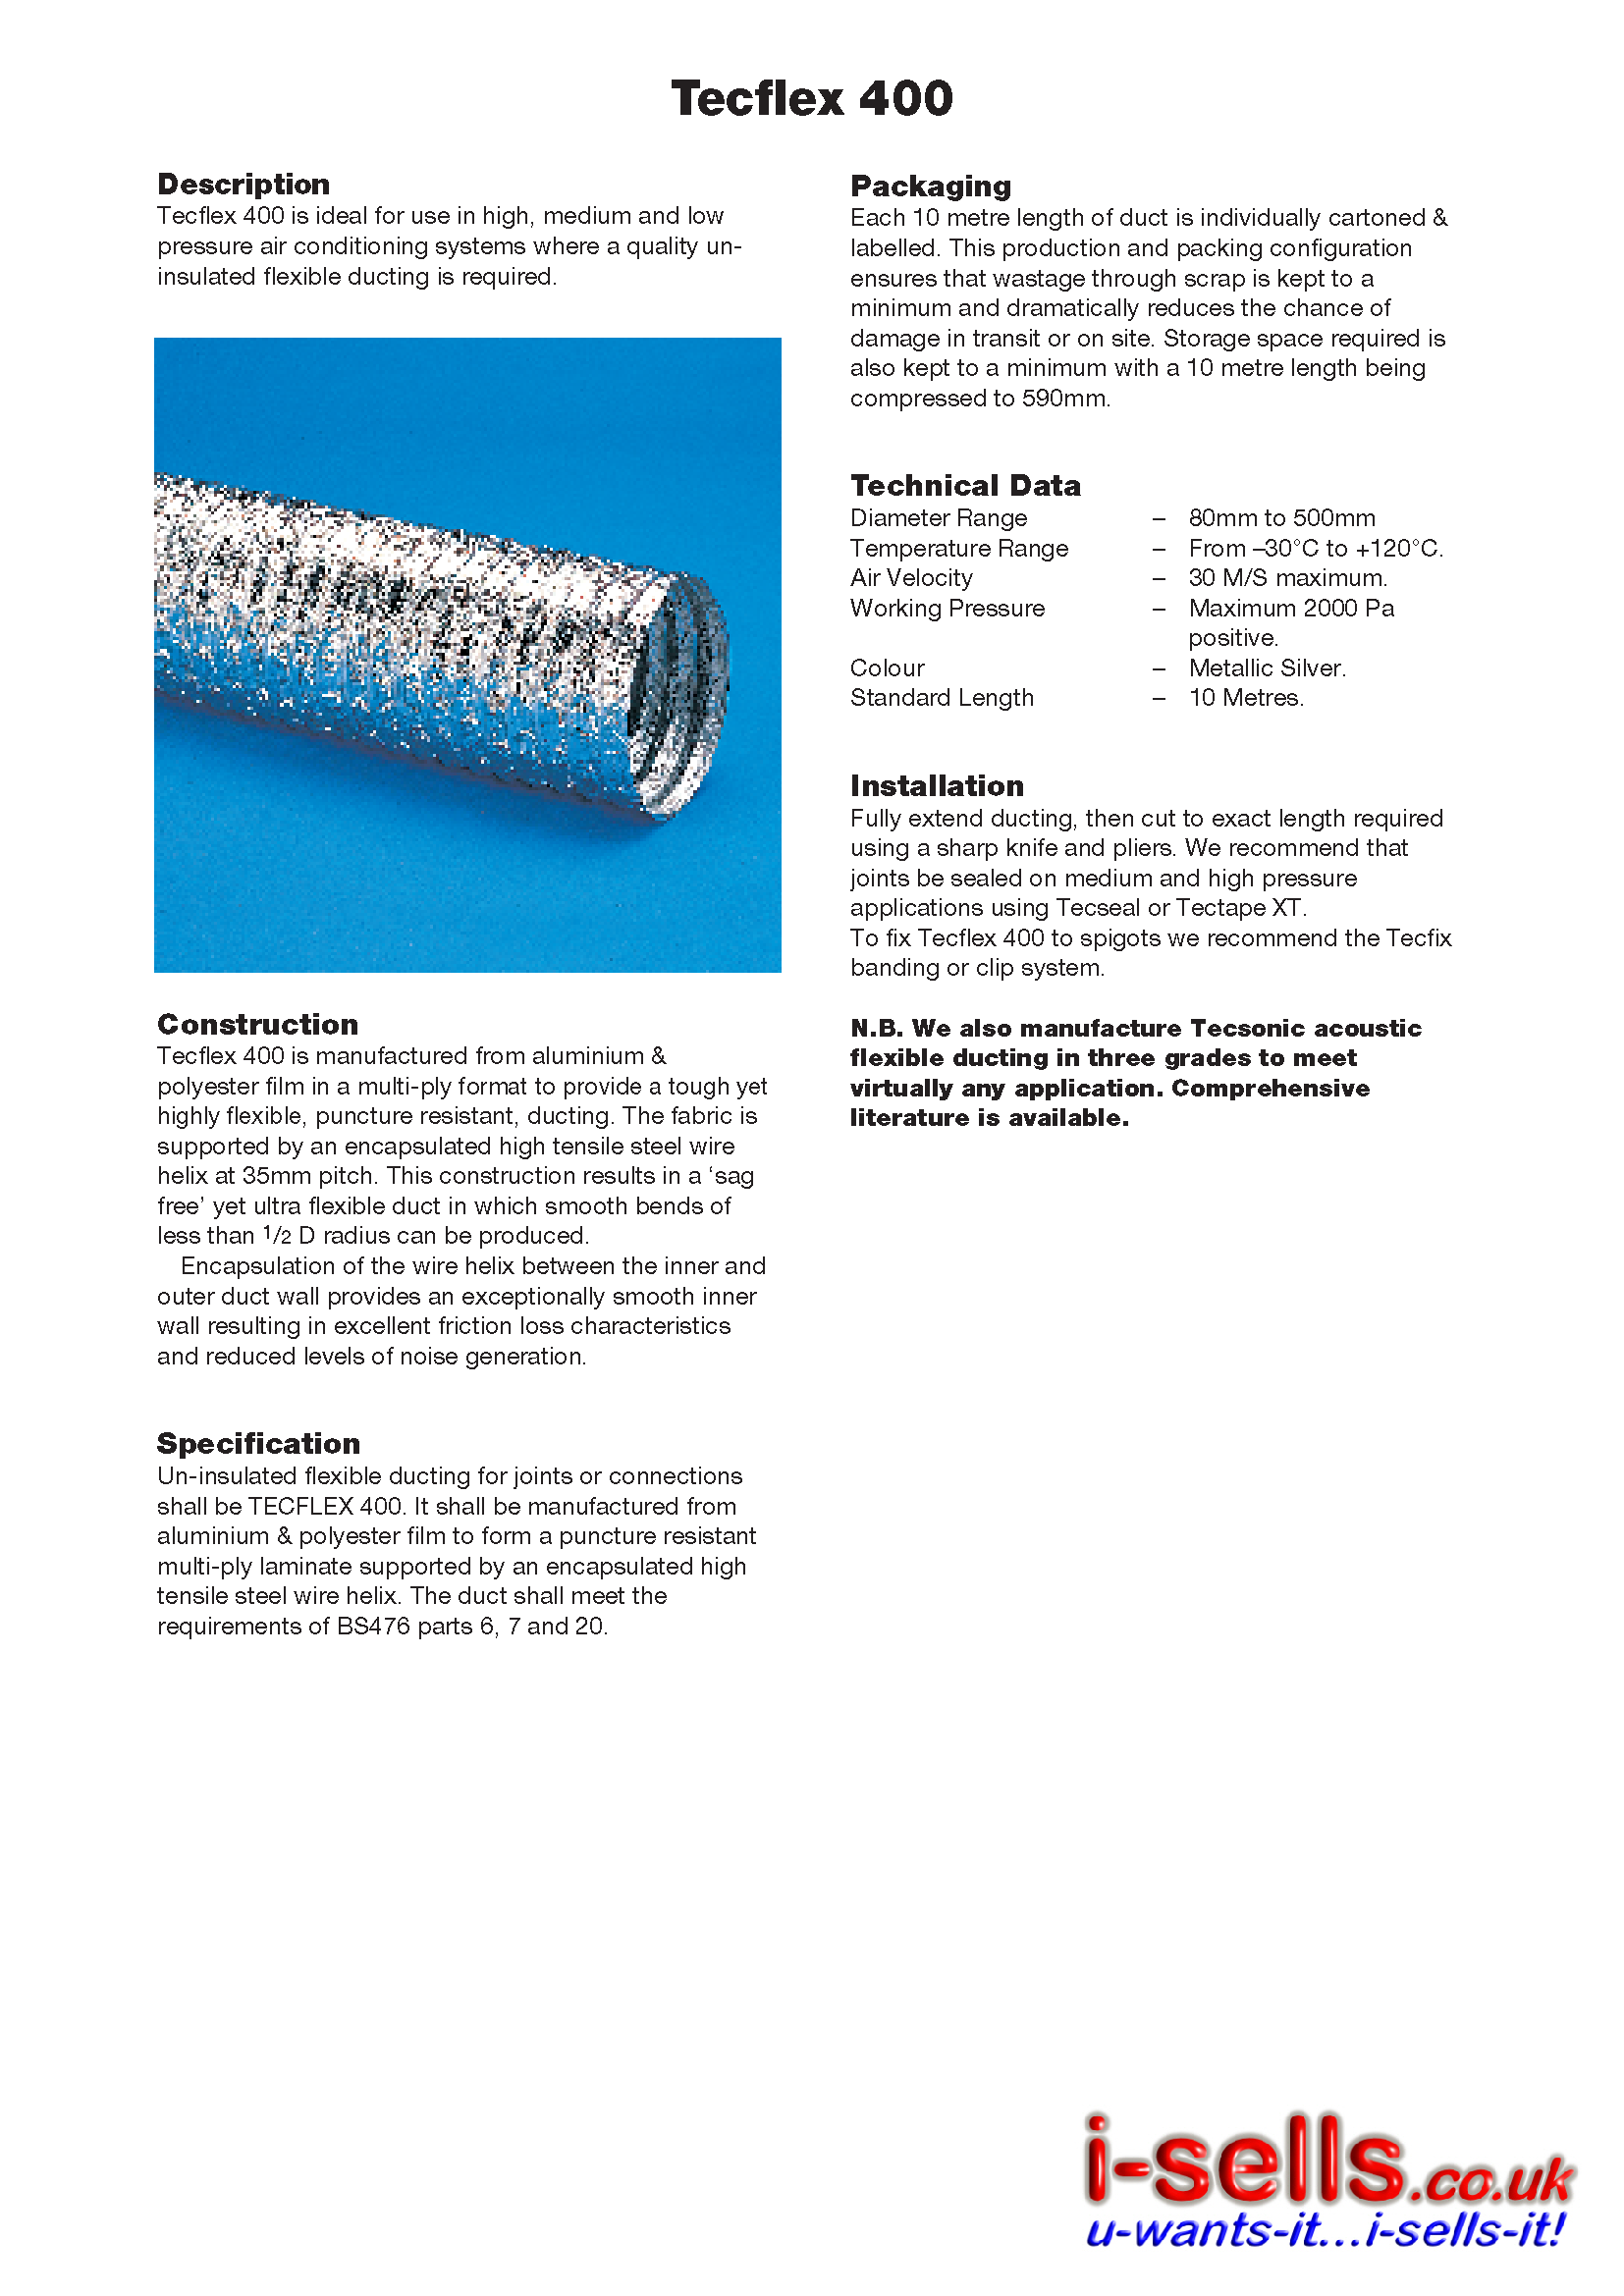 Aluminium Flexible Ducting - 10M - 180mm